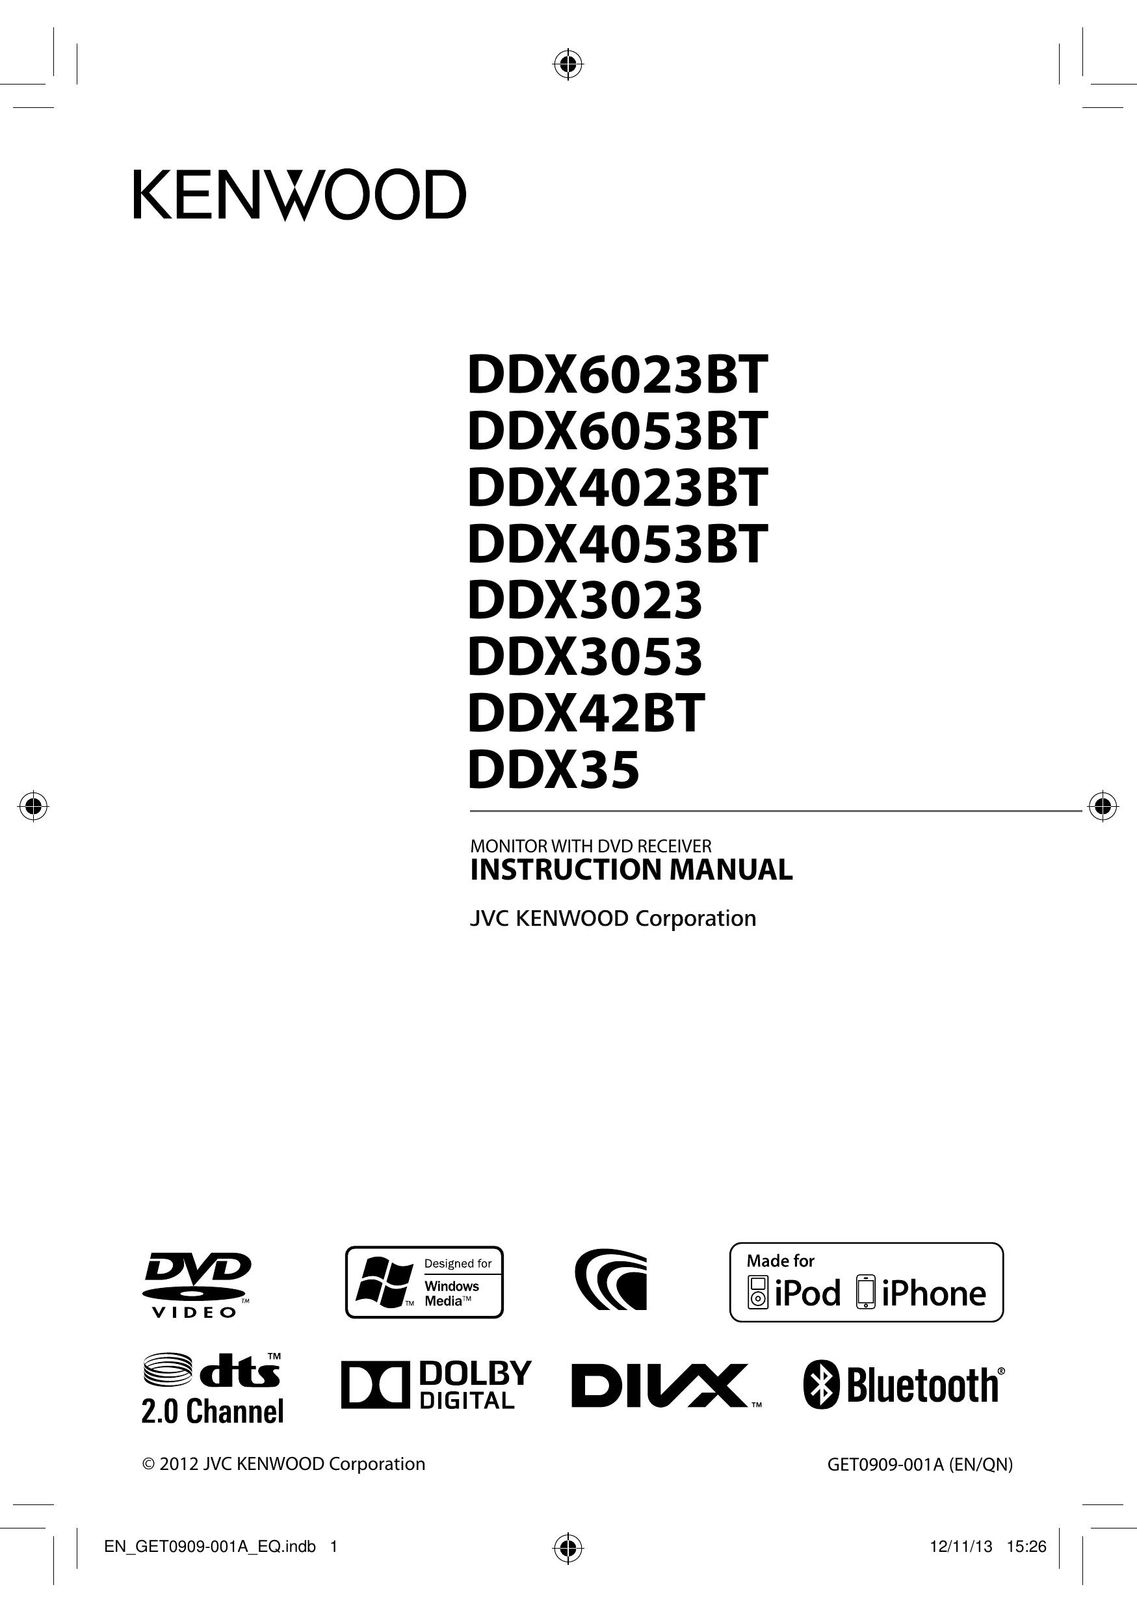 Kenwood DDX6023BT Car Video System User Manual